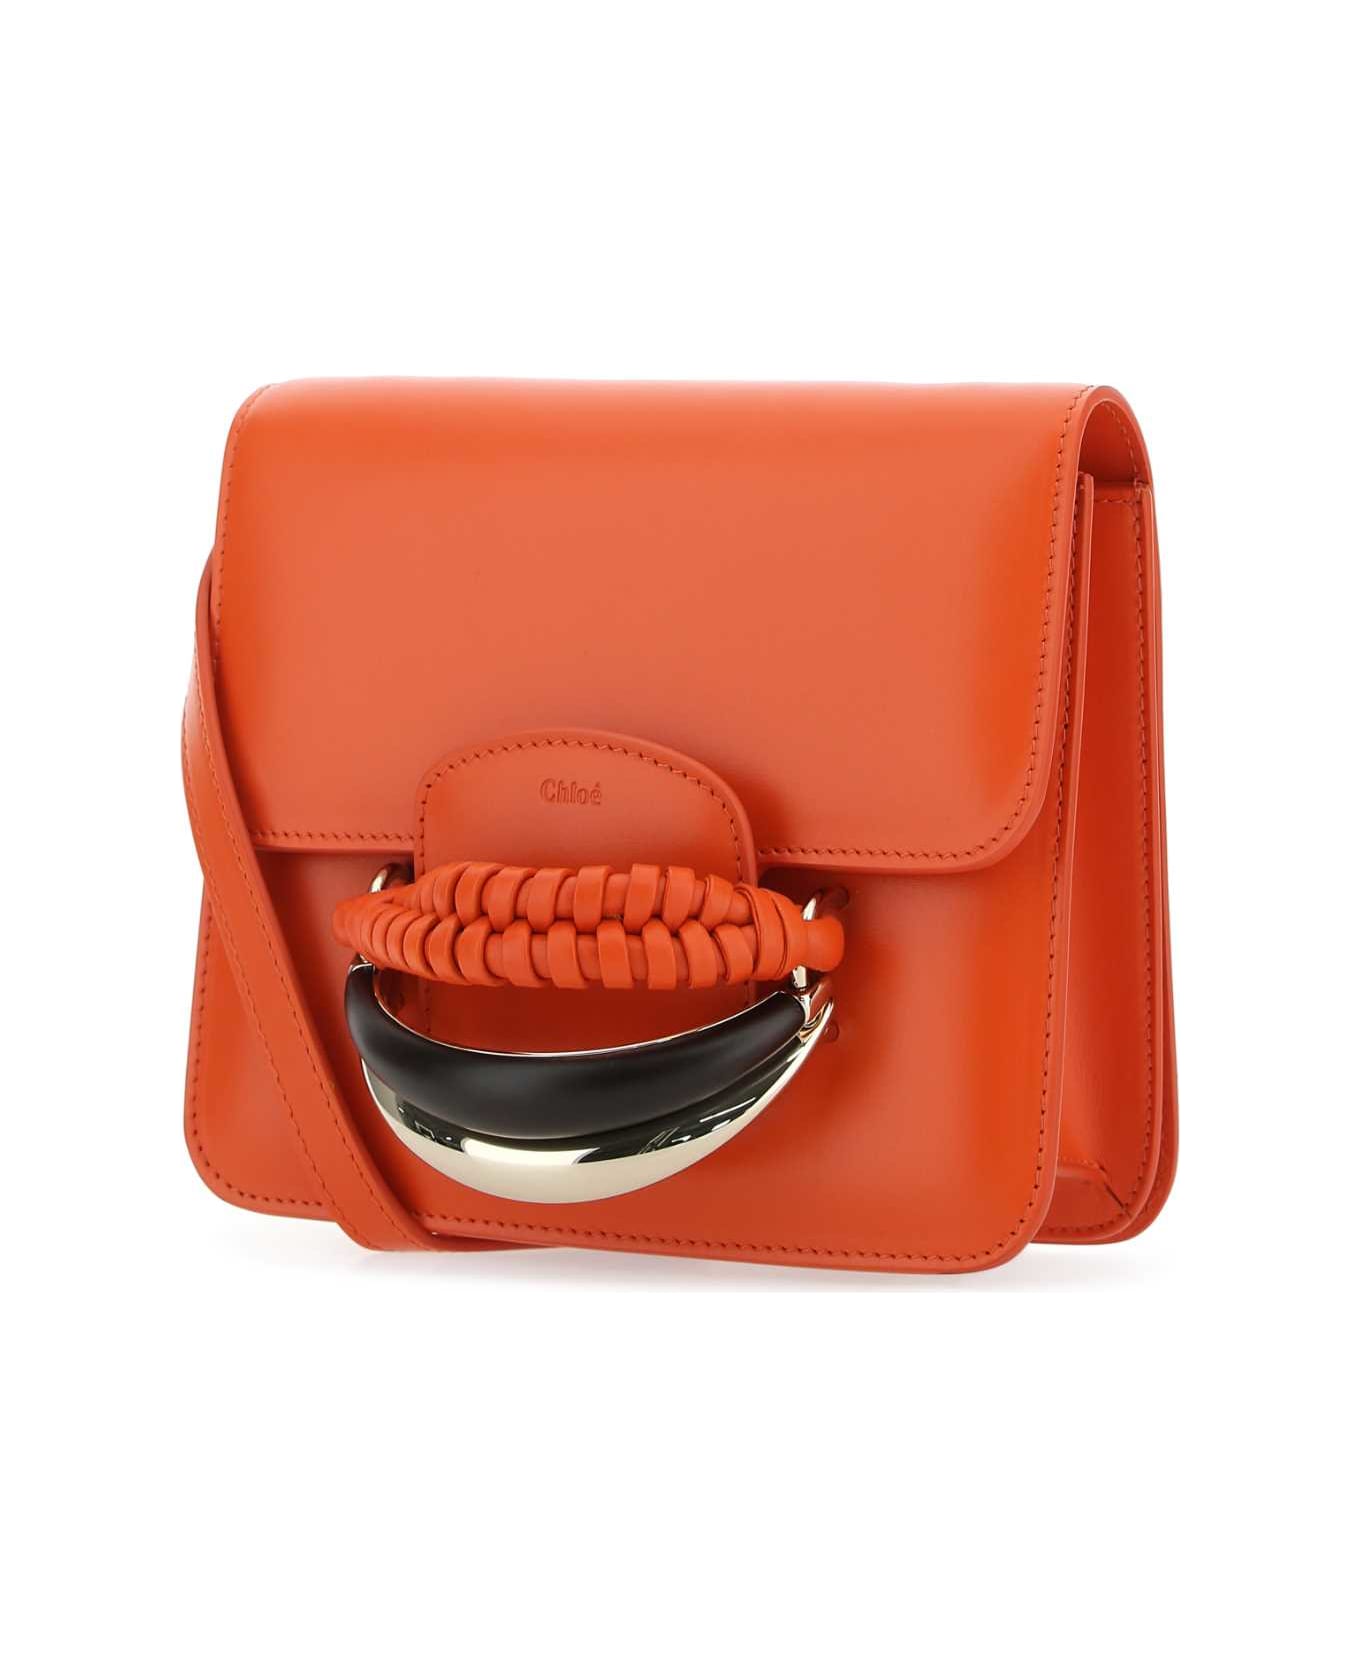 Chloé Orange Leather Kattie Clutch - 837